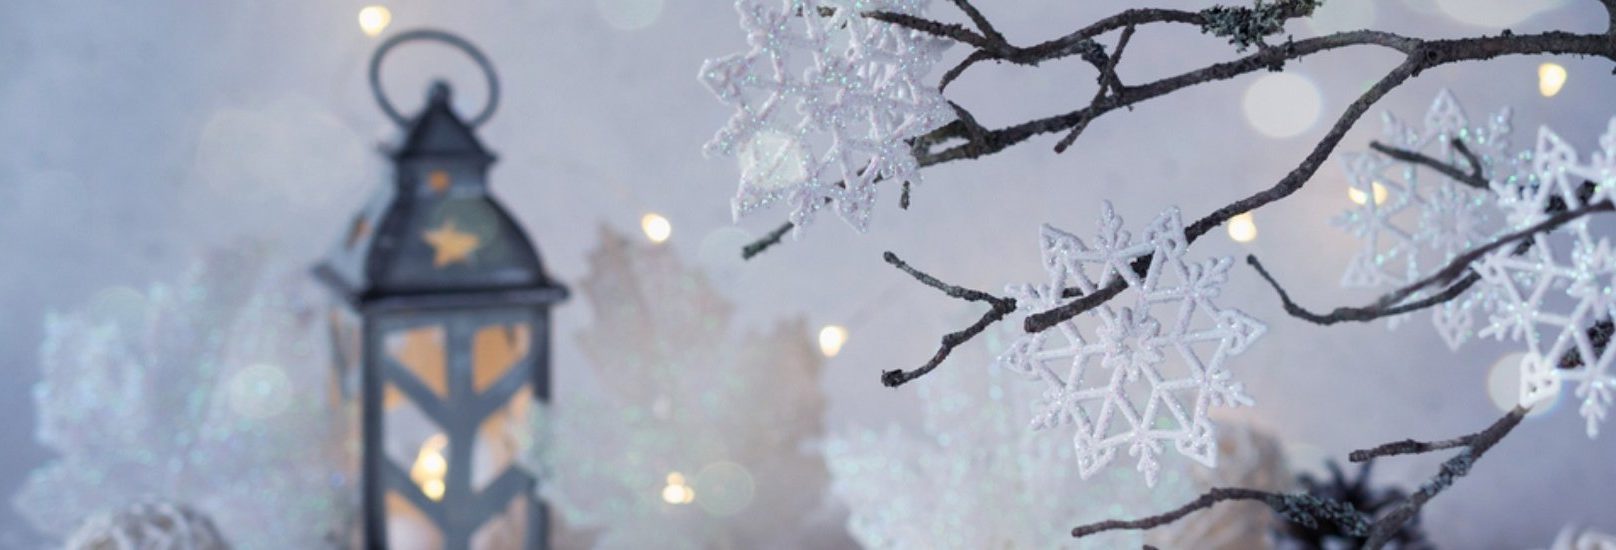 Winter lantern background